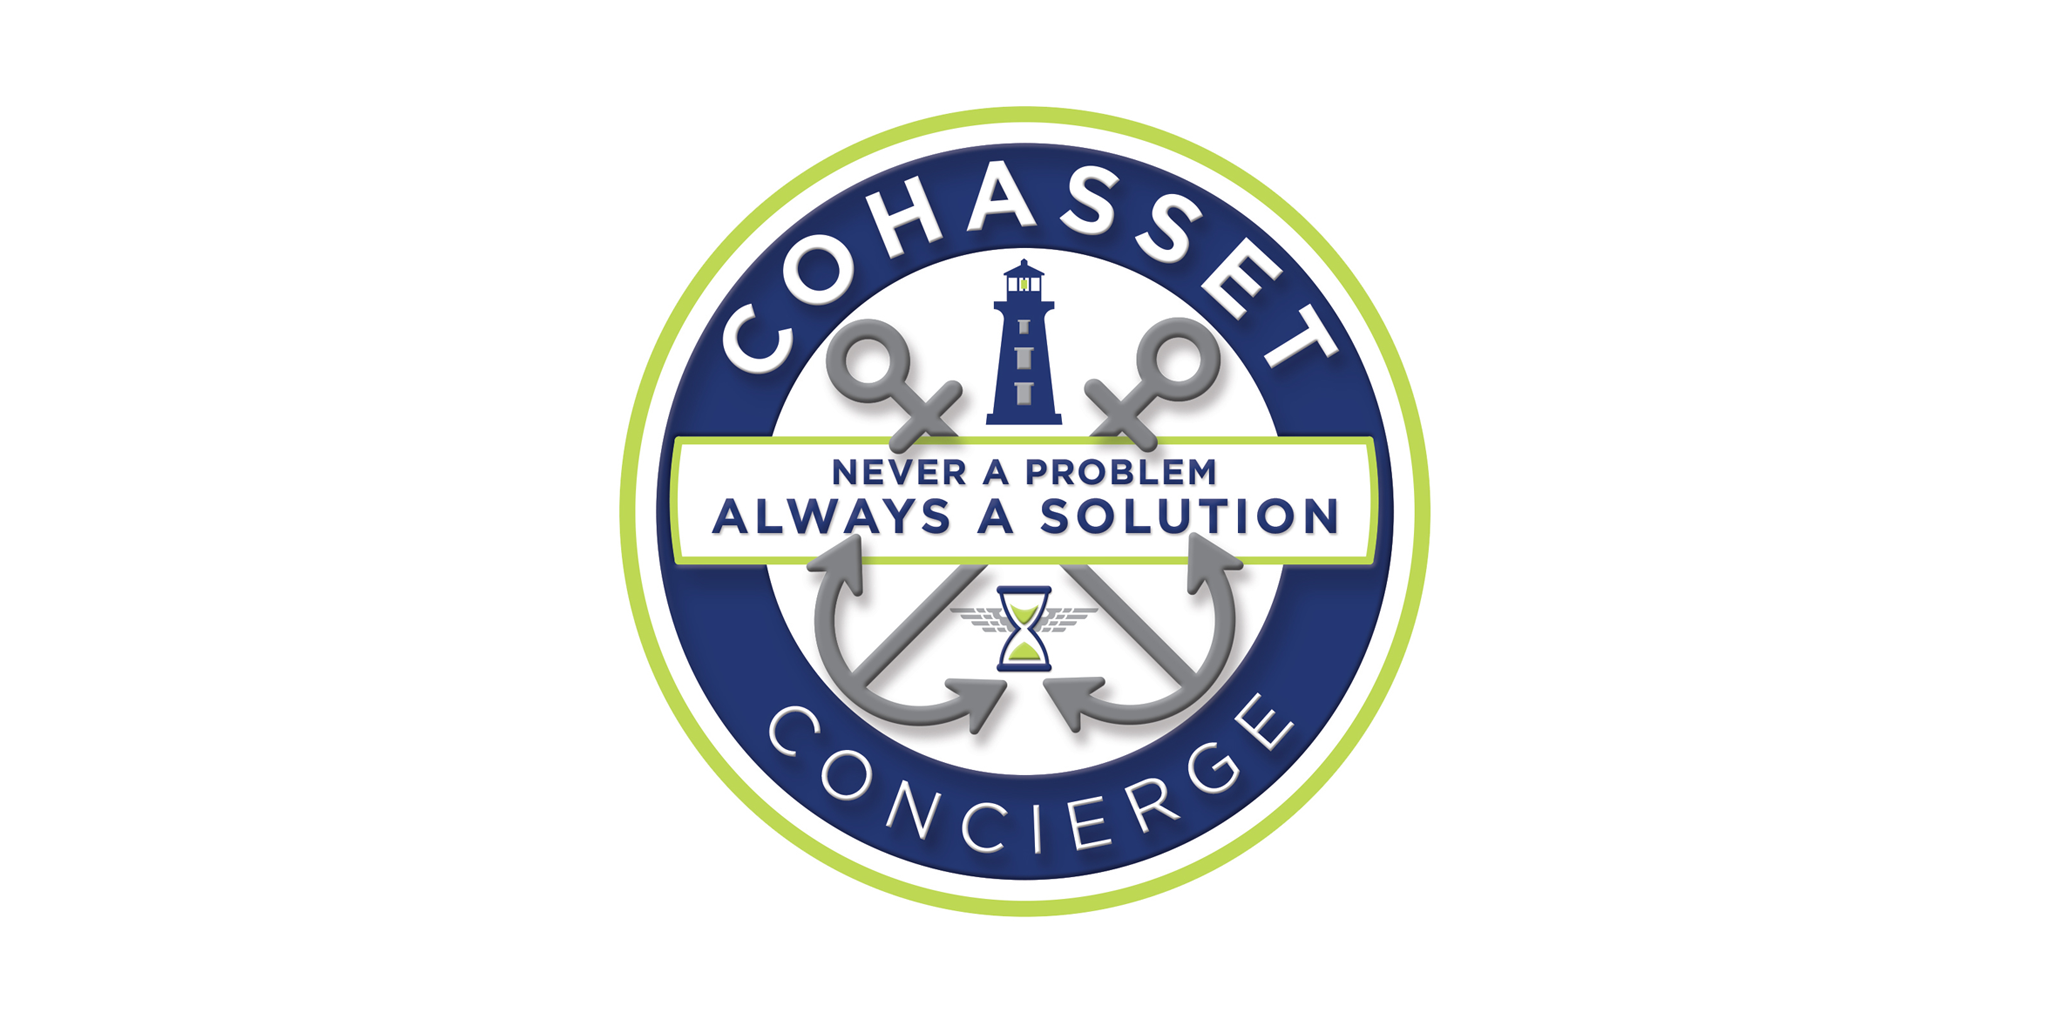 Cohasset Concierge Logo_110215.png